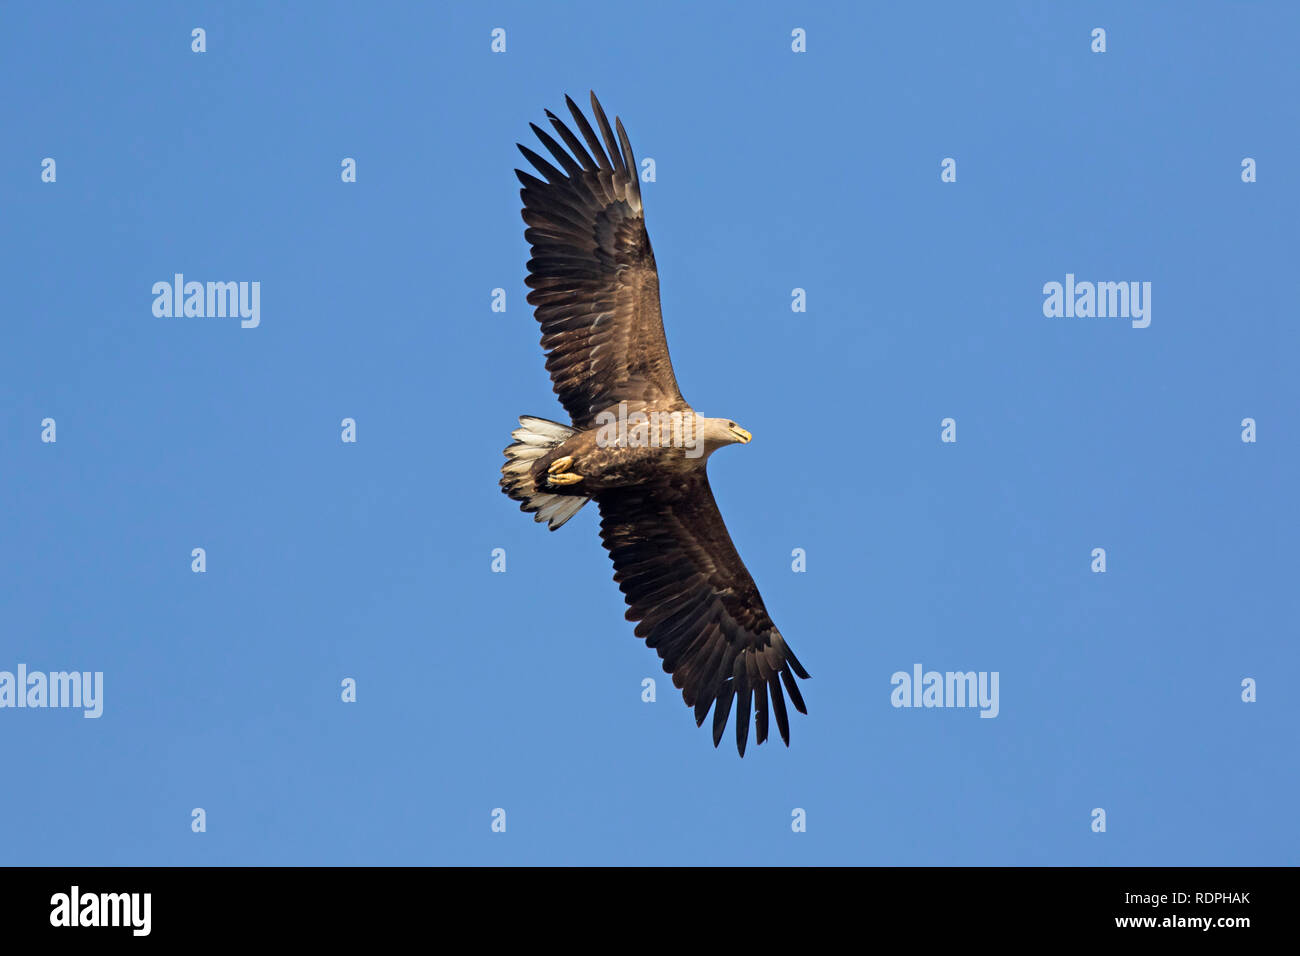 White-tailed eagle / sea eagle / erne (Haliaeetus albicilla) in flight soaring against blue sky Stock Photo